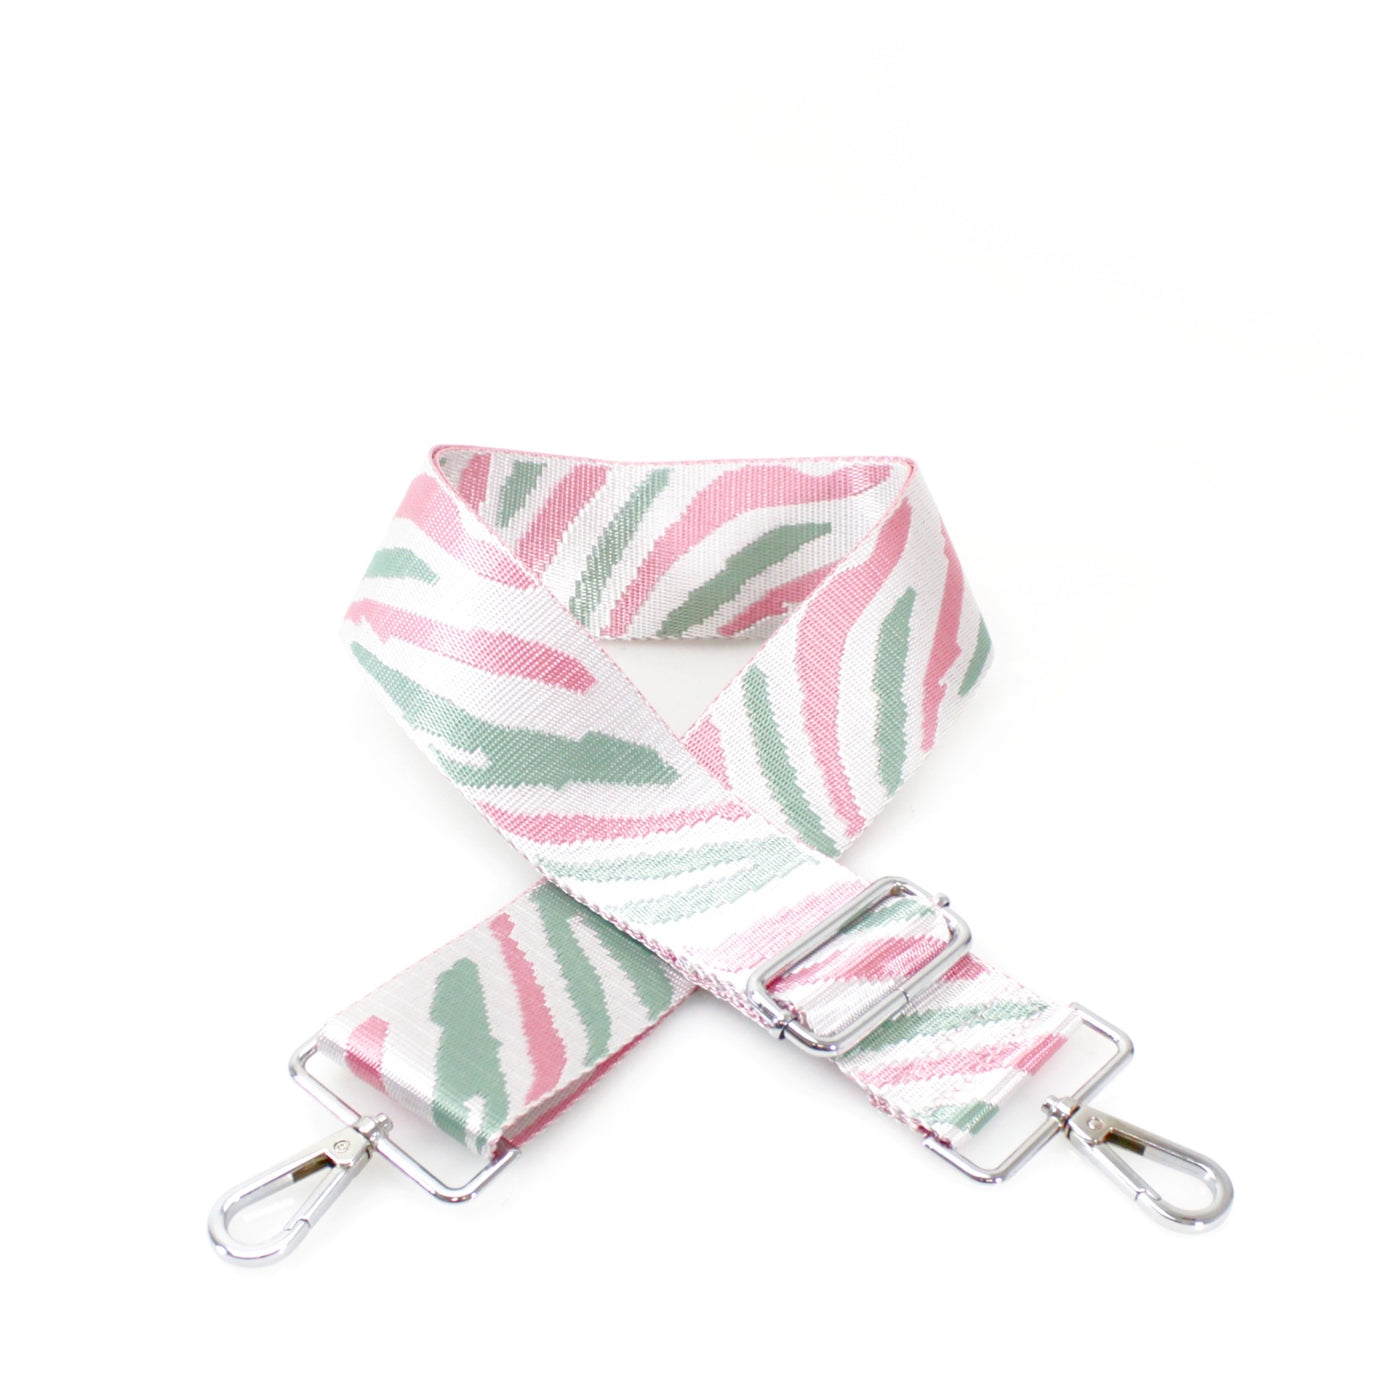 White, Pink & Mint Green Zebra Print Bag Strap - Silver Fittings